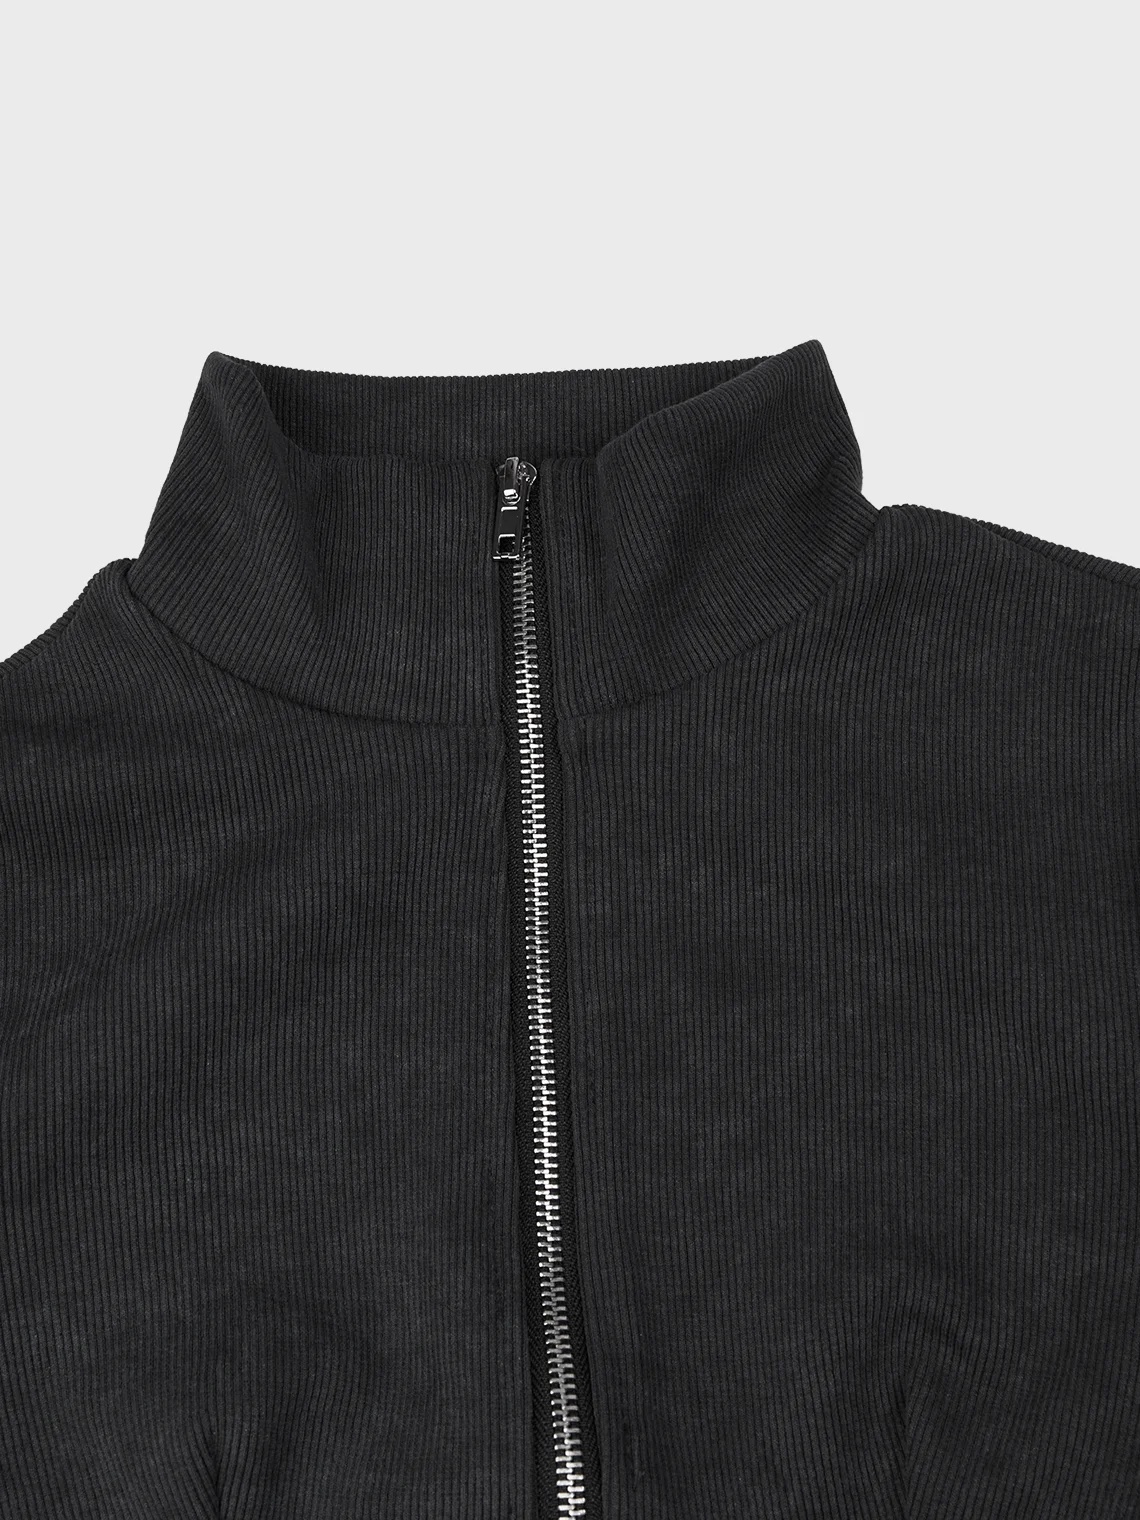 【Final Sale】Stand Collar Zipper Plain Long Sleeve Jacket